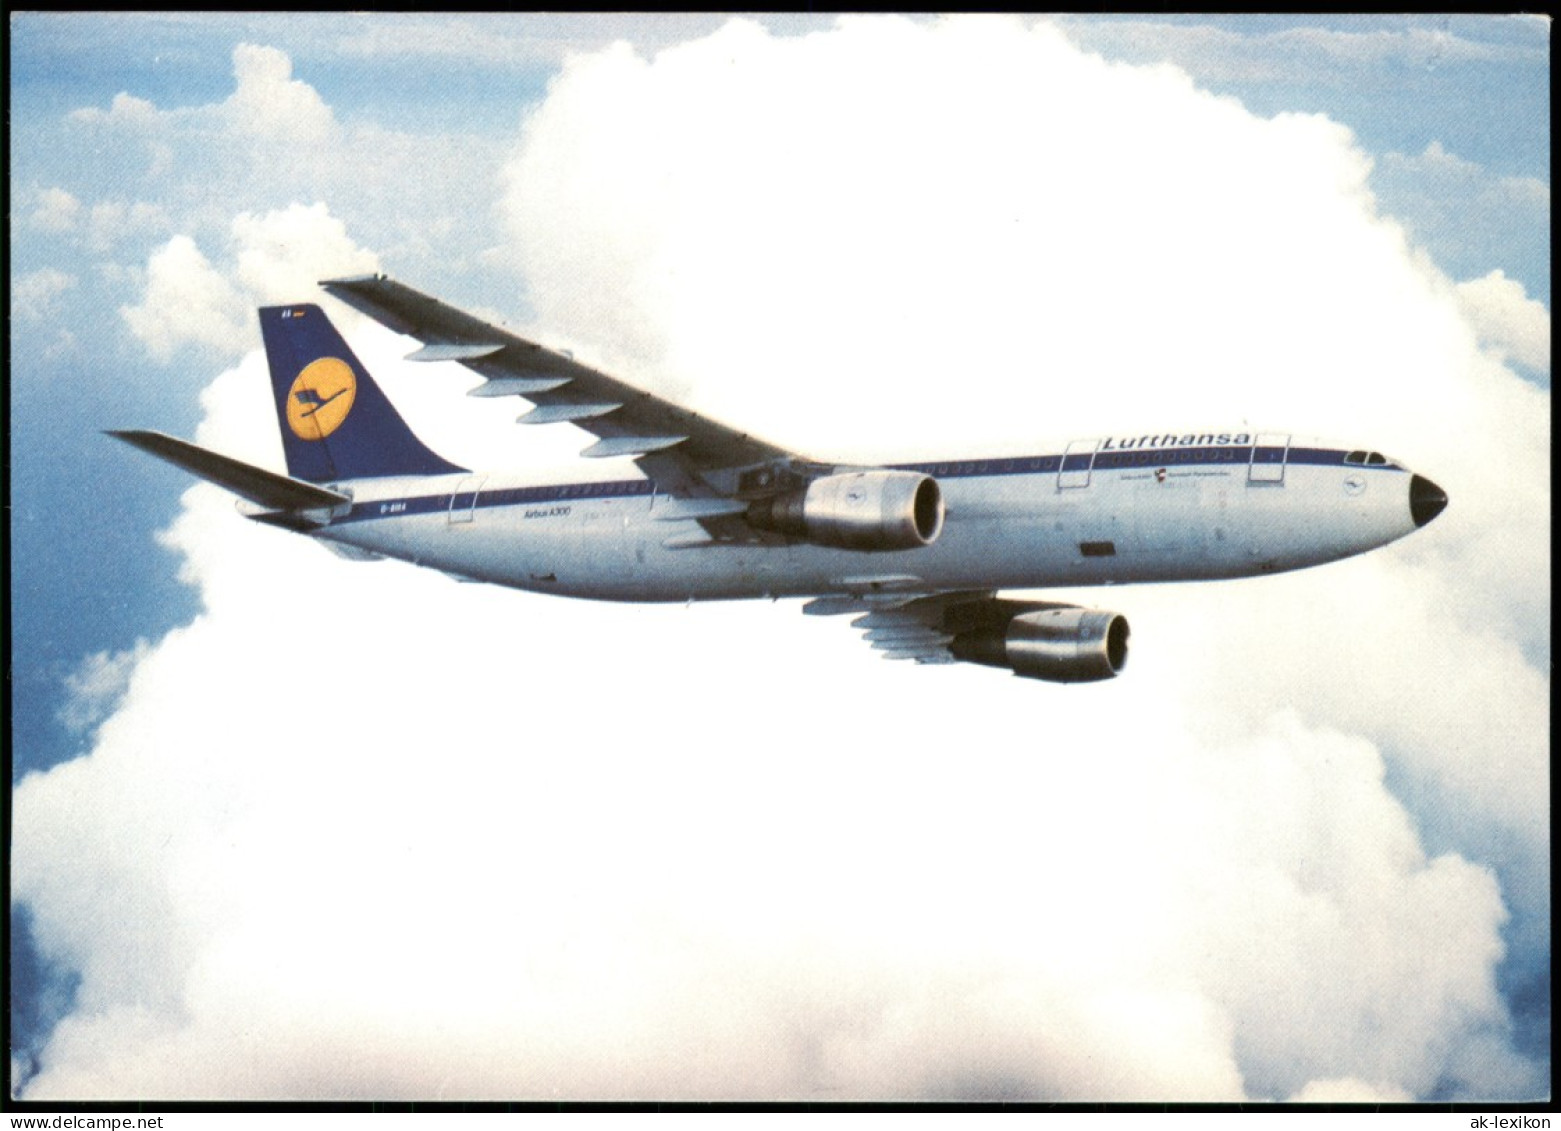 Ansichtskarte  Lufthansa A300 Flugzeug Airplane Avion Airbus 1987 - 1946-....: Ere Moderne